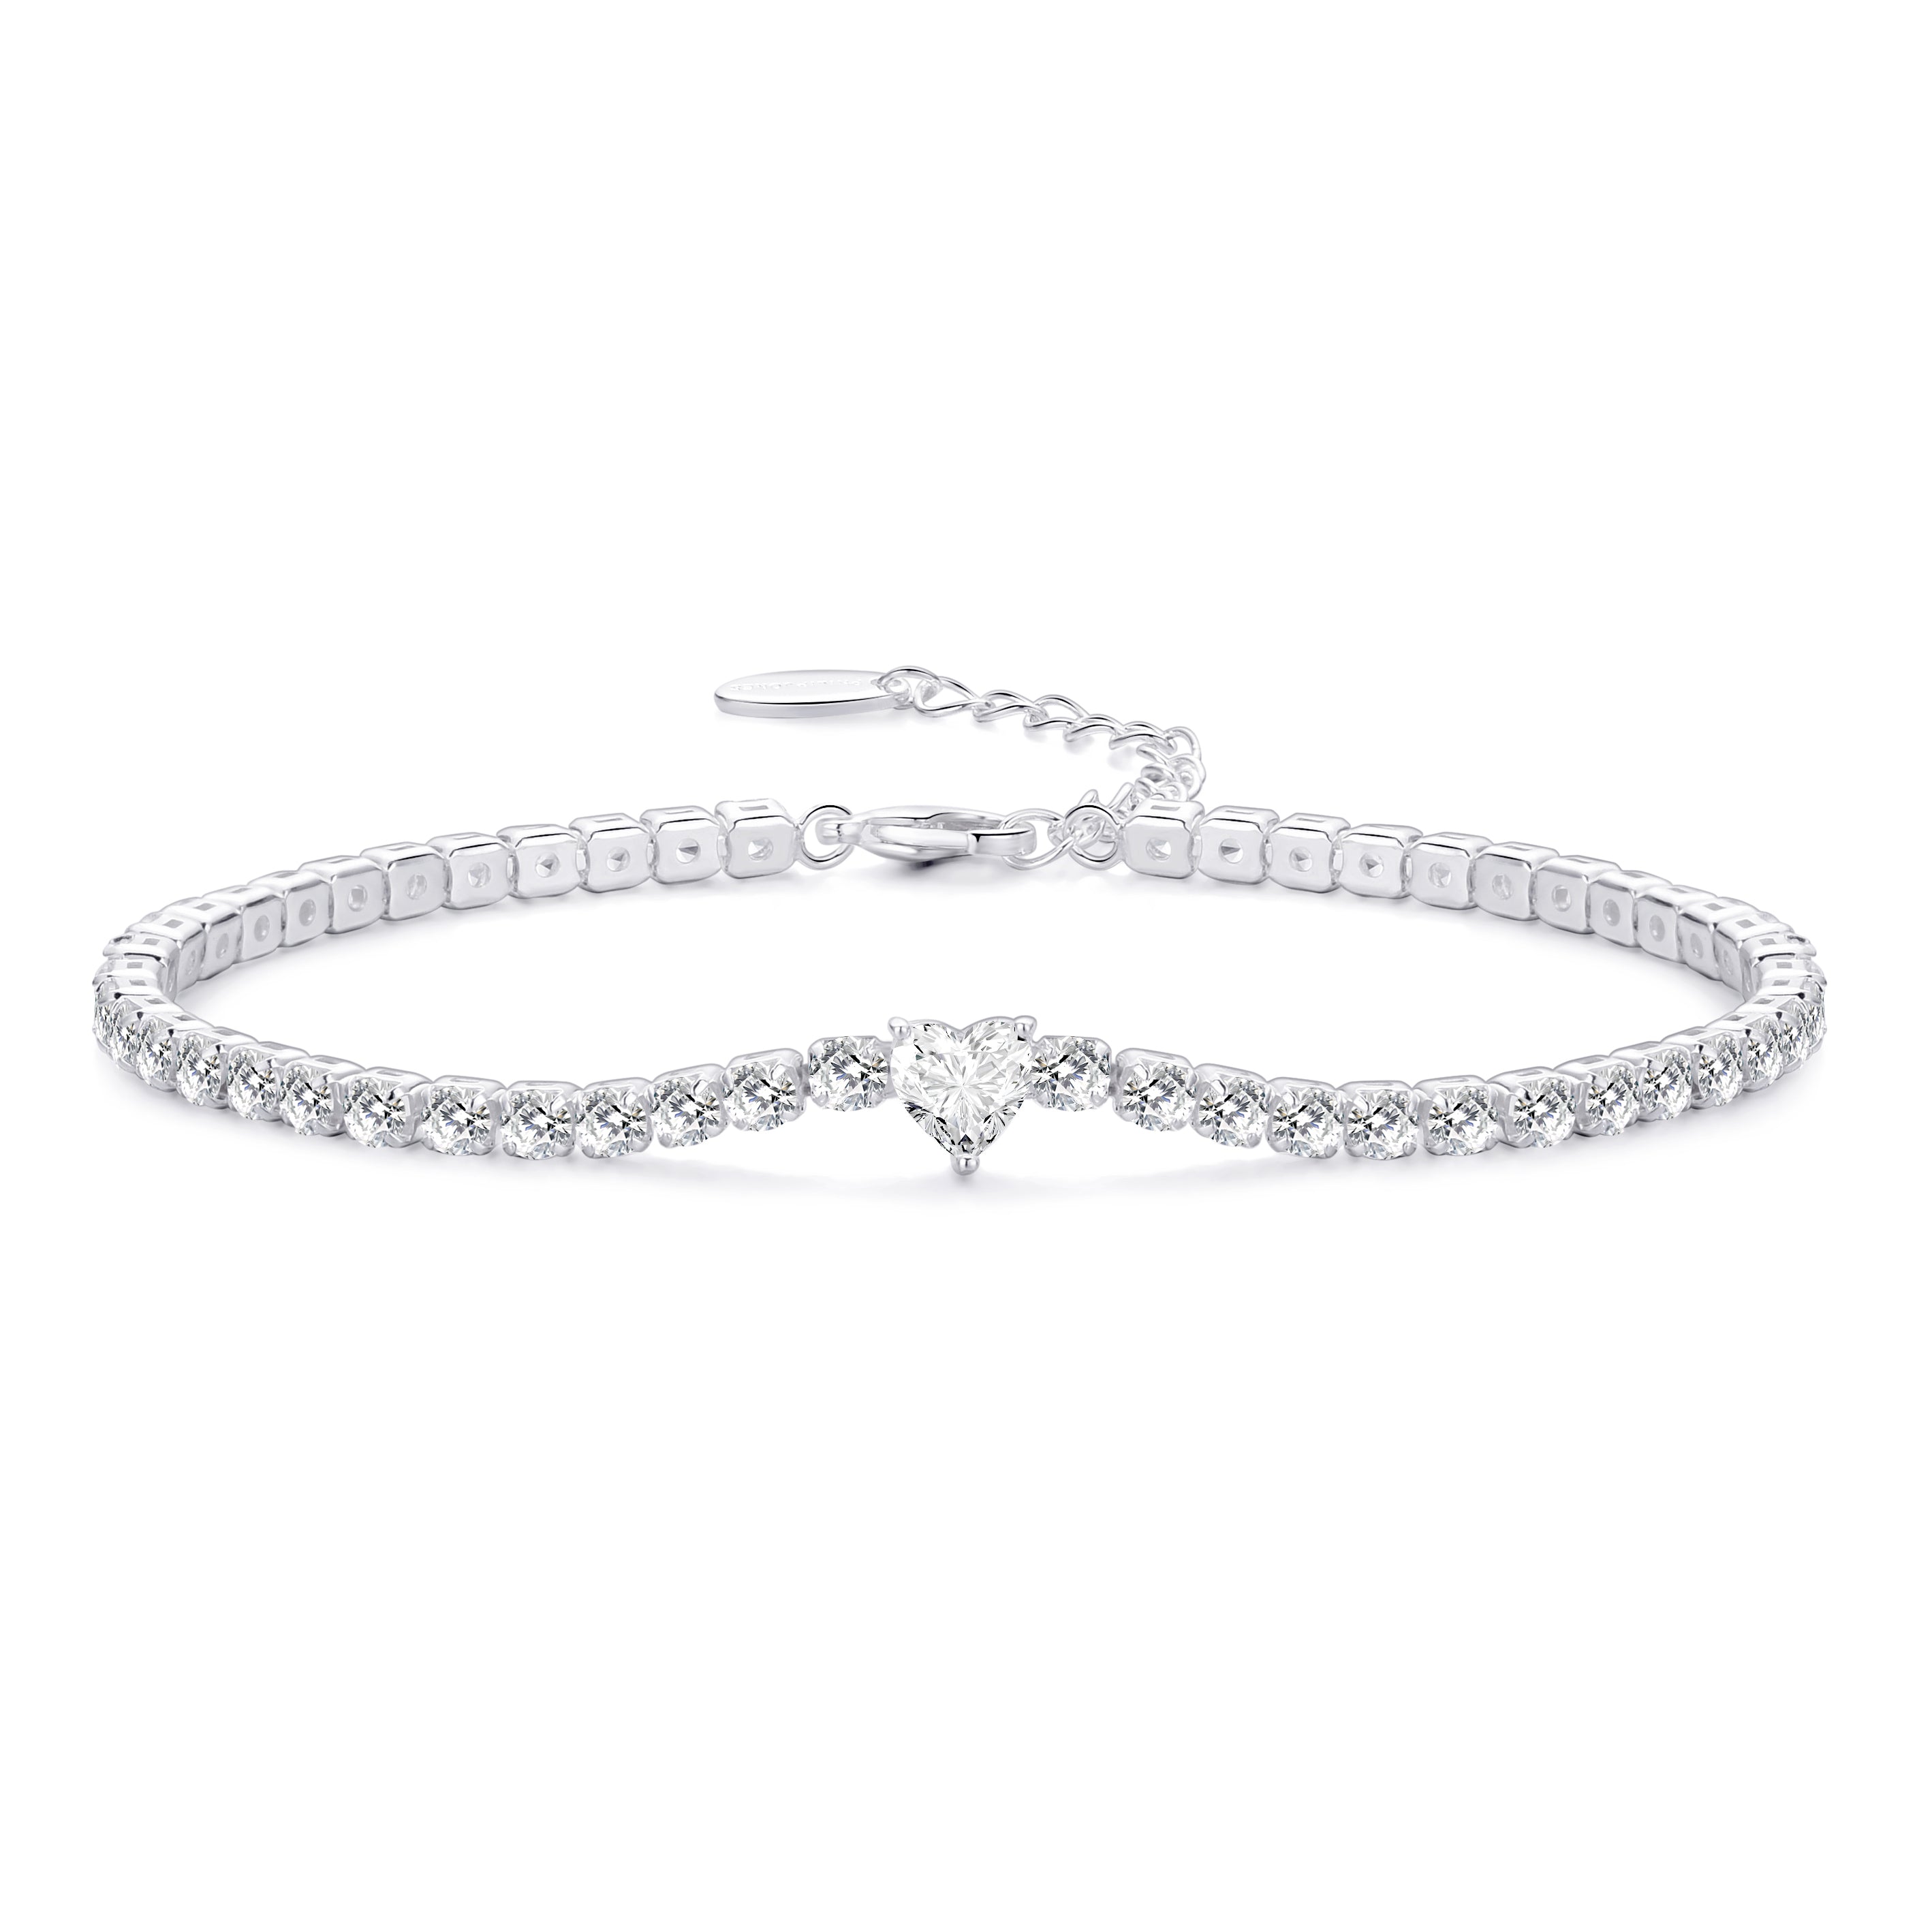 Heart Solitaire Tennis Bracelet Created with Zircondia® Crystals by Philip Jones Jewellery